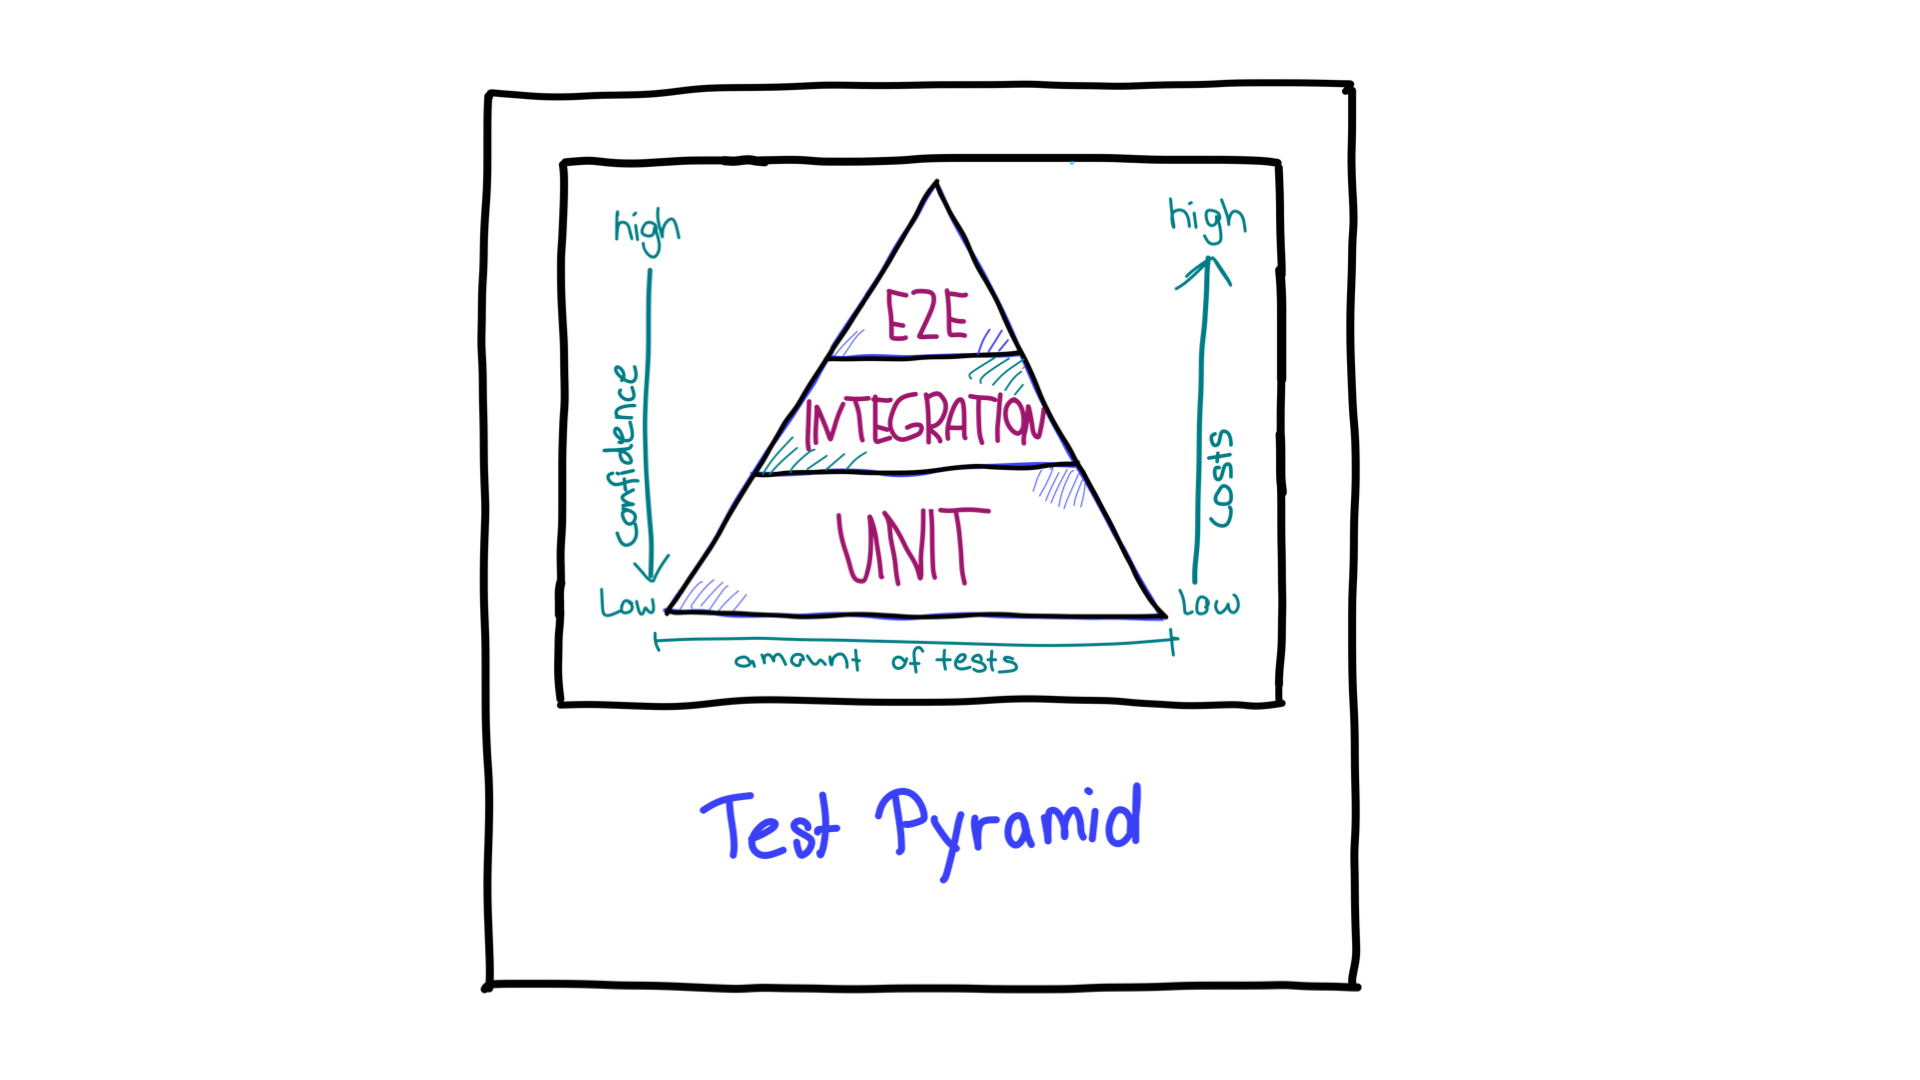 Pirâmide de teste com setas mostrando a direção de confiança e os recursos necessários para diferentes tipos de teste.